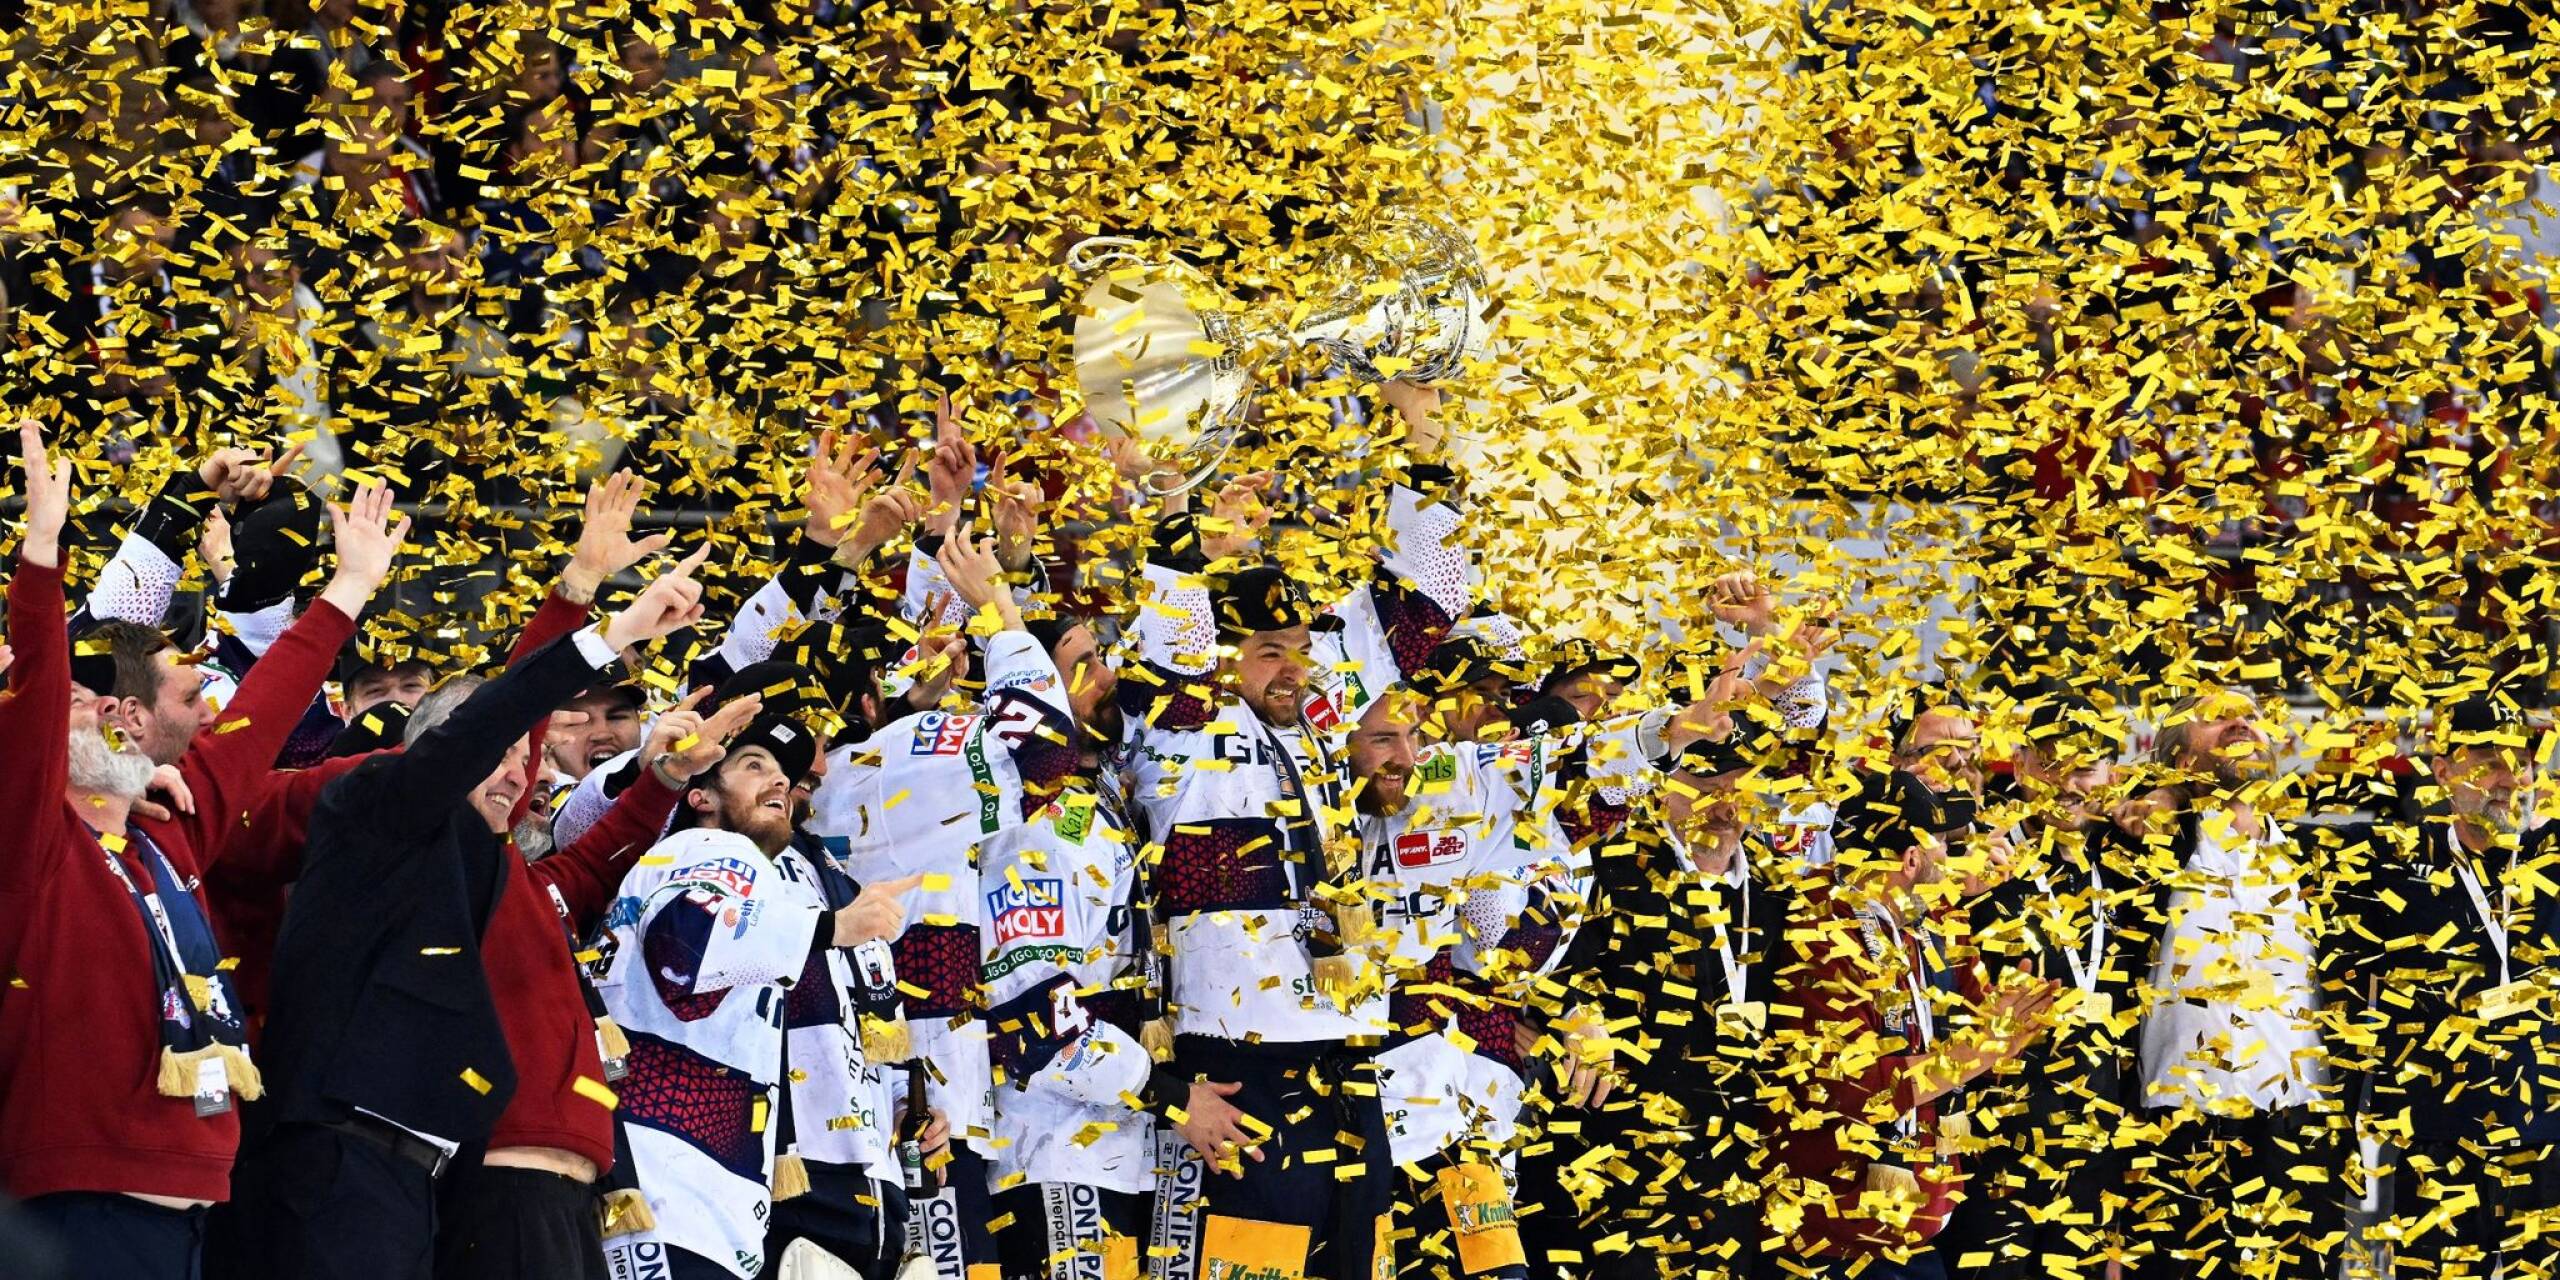 Die Eisbären Berlin sind wieder deutscher Meister. Der Vorrundenzweite der Deutschen Eishockey Liga sicherte sich durch das 2:0 in Bremerhaven beim Hauptrundensieger Fischtown Pinguins vorzeitig den zehnten Meistertitel und damit die dritte Meisterschaft seit 2021.